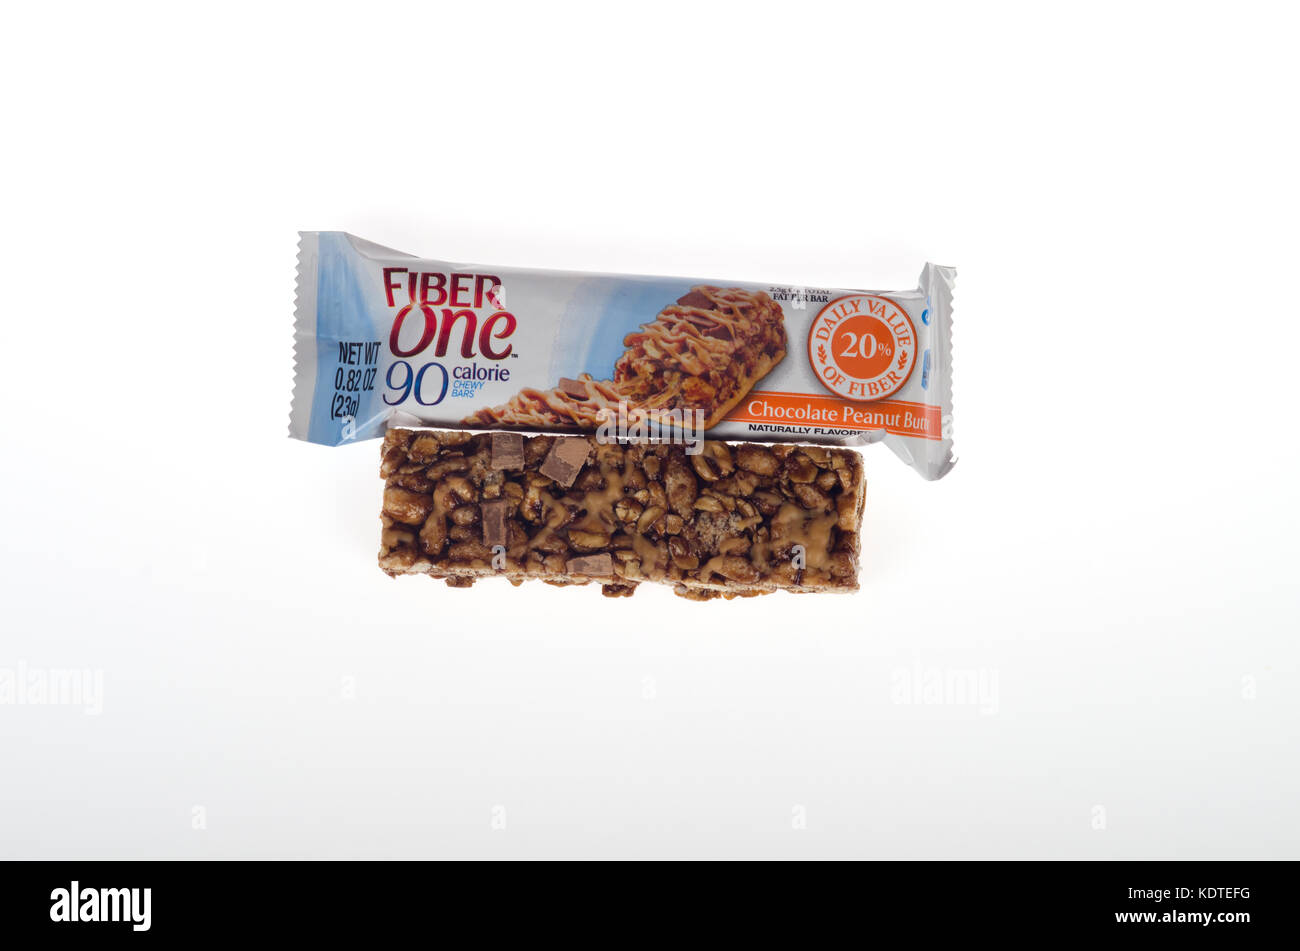 Una fibra di arachidi cioccolato snack bar con imballaggio su sfondo bianco intaglio USA Foto Stock